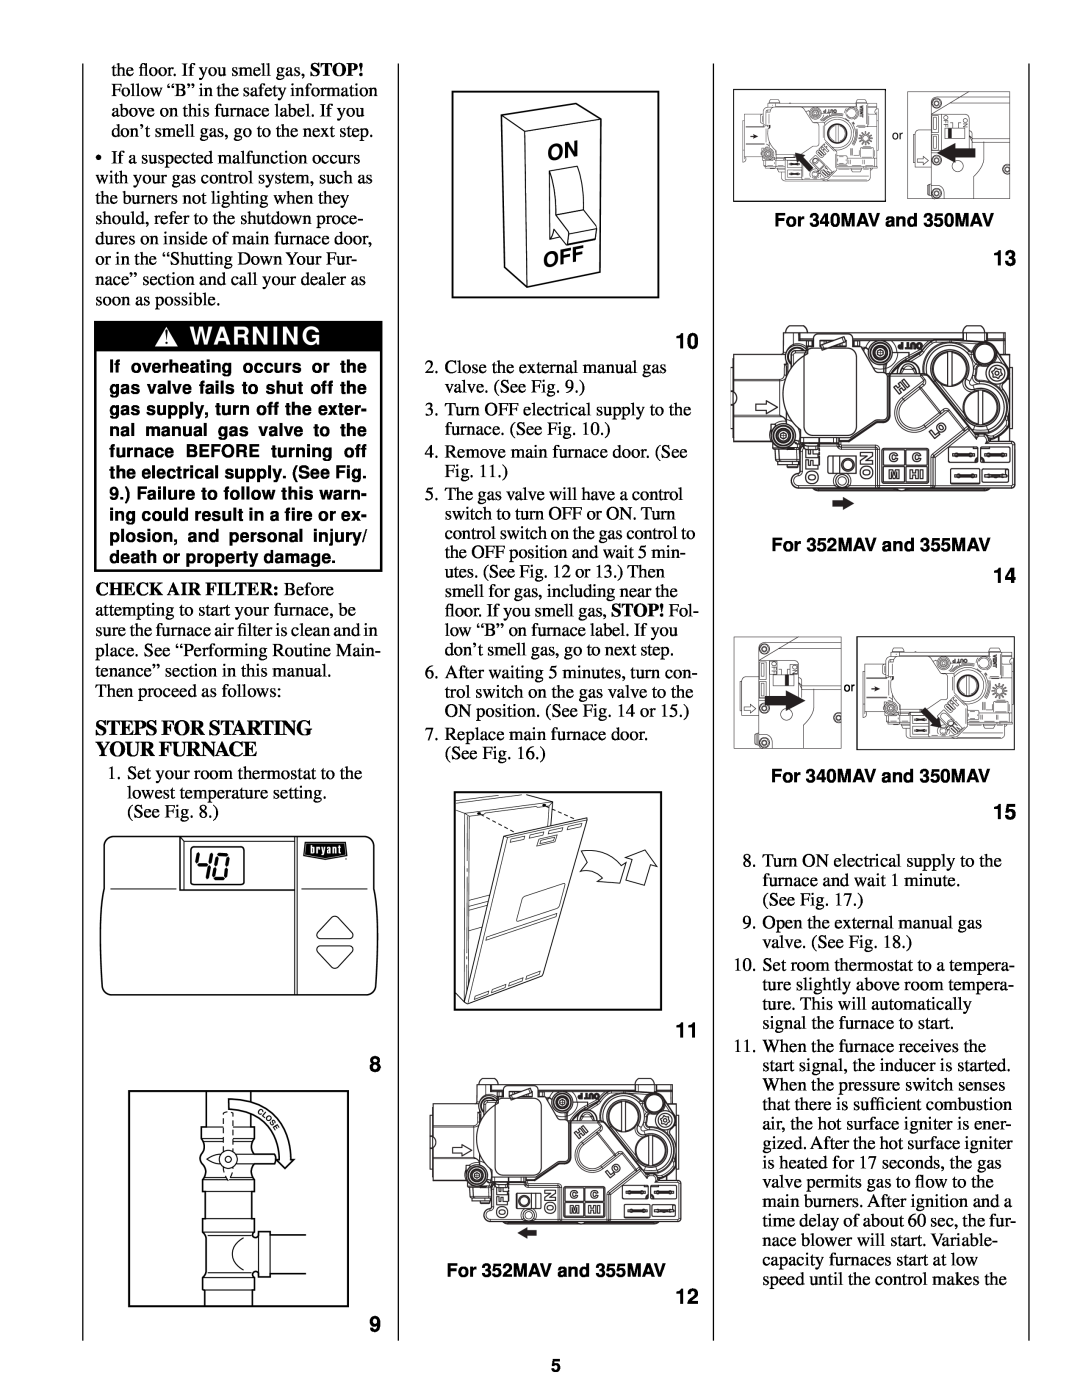 Bryant manual Steps For Starting Your Furnace, For 352MAV and 355MAV, For 340MAV and 350MAV 